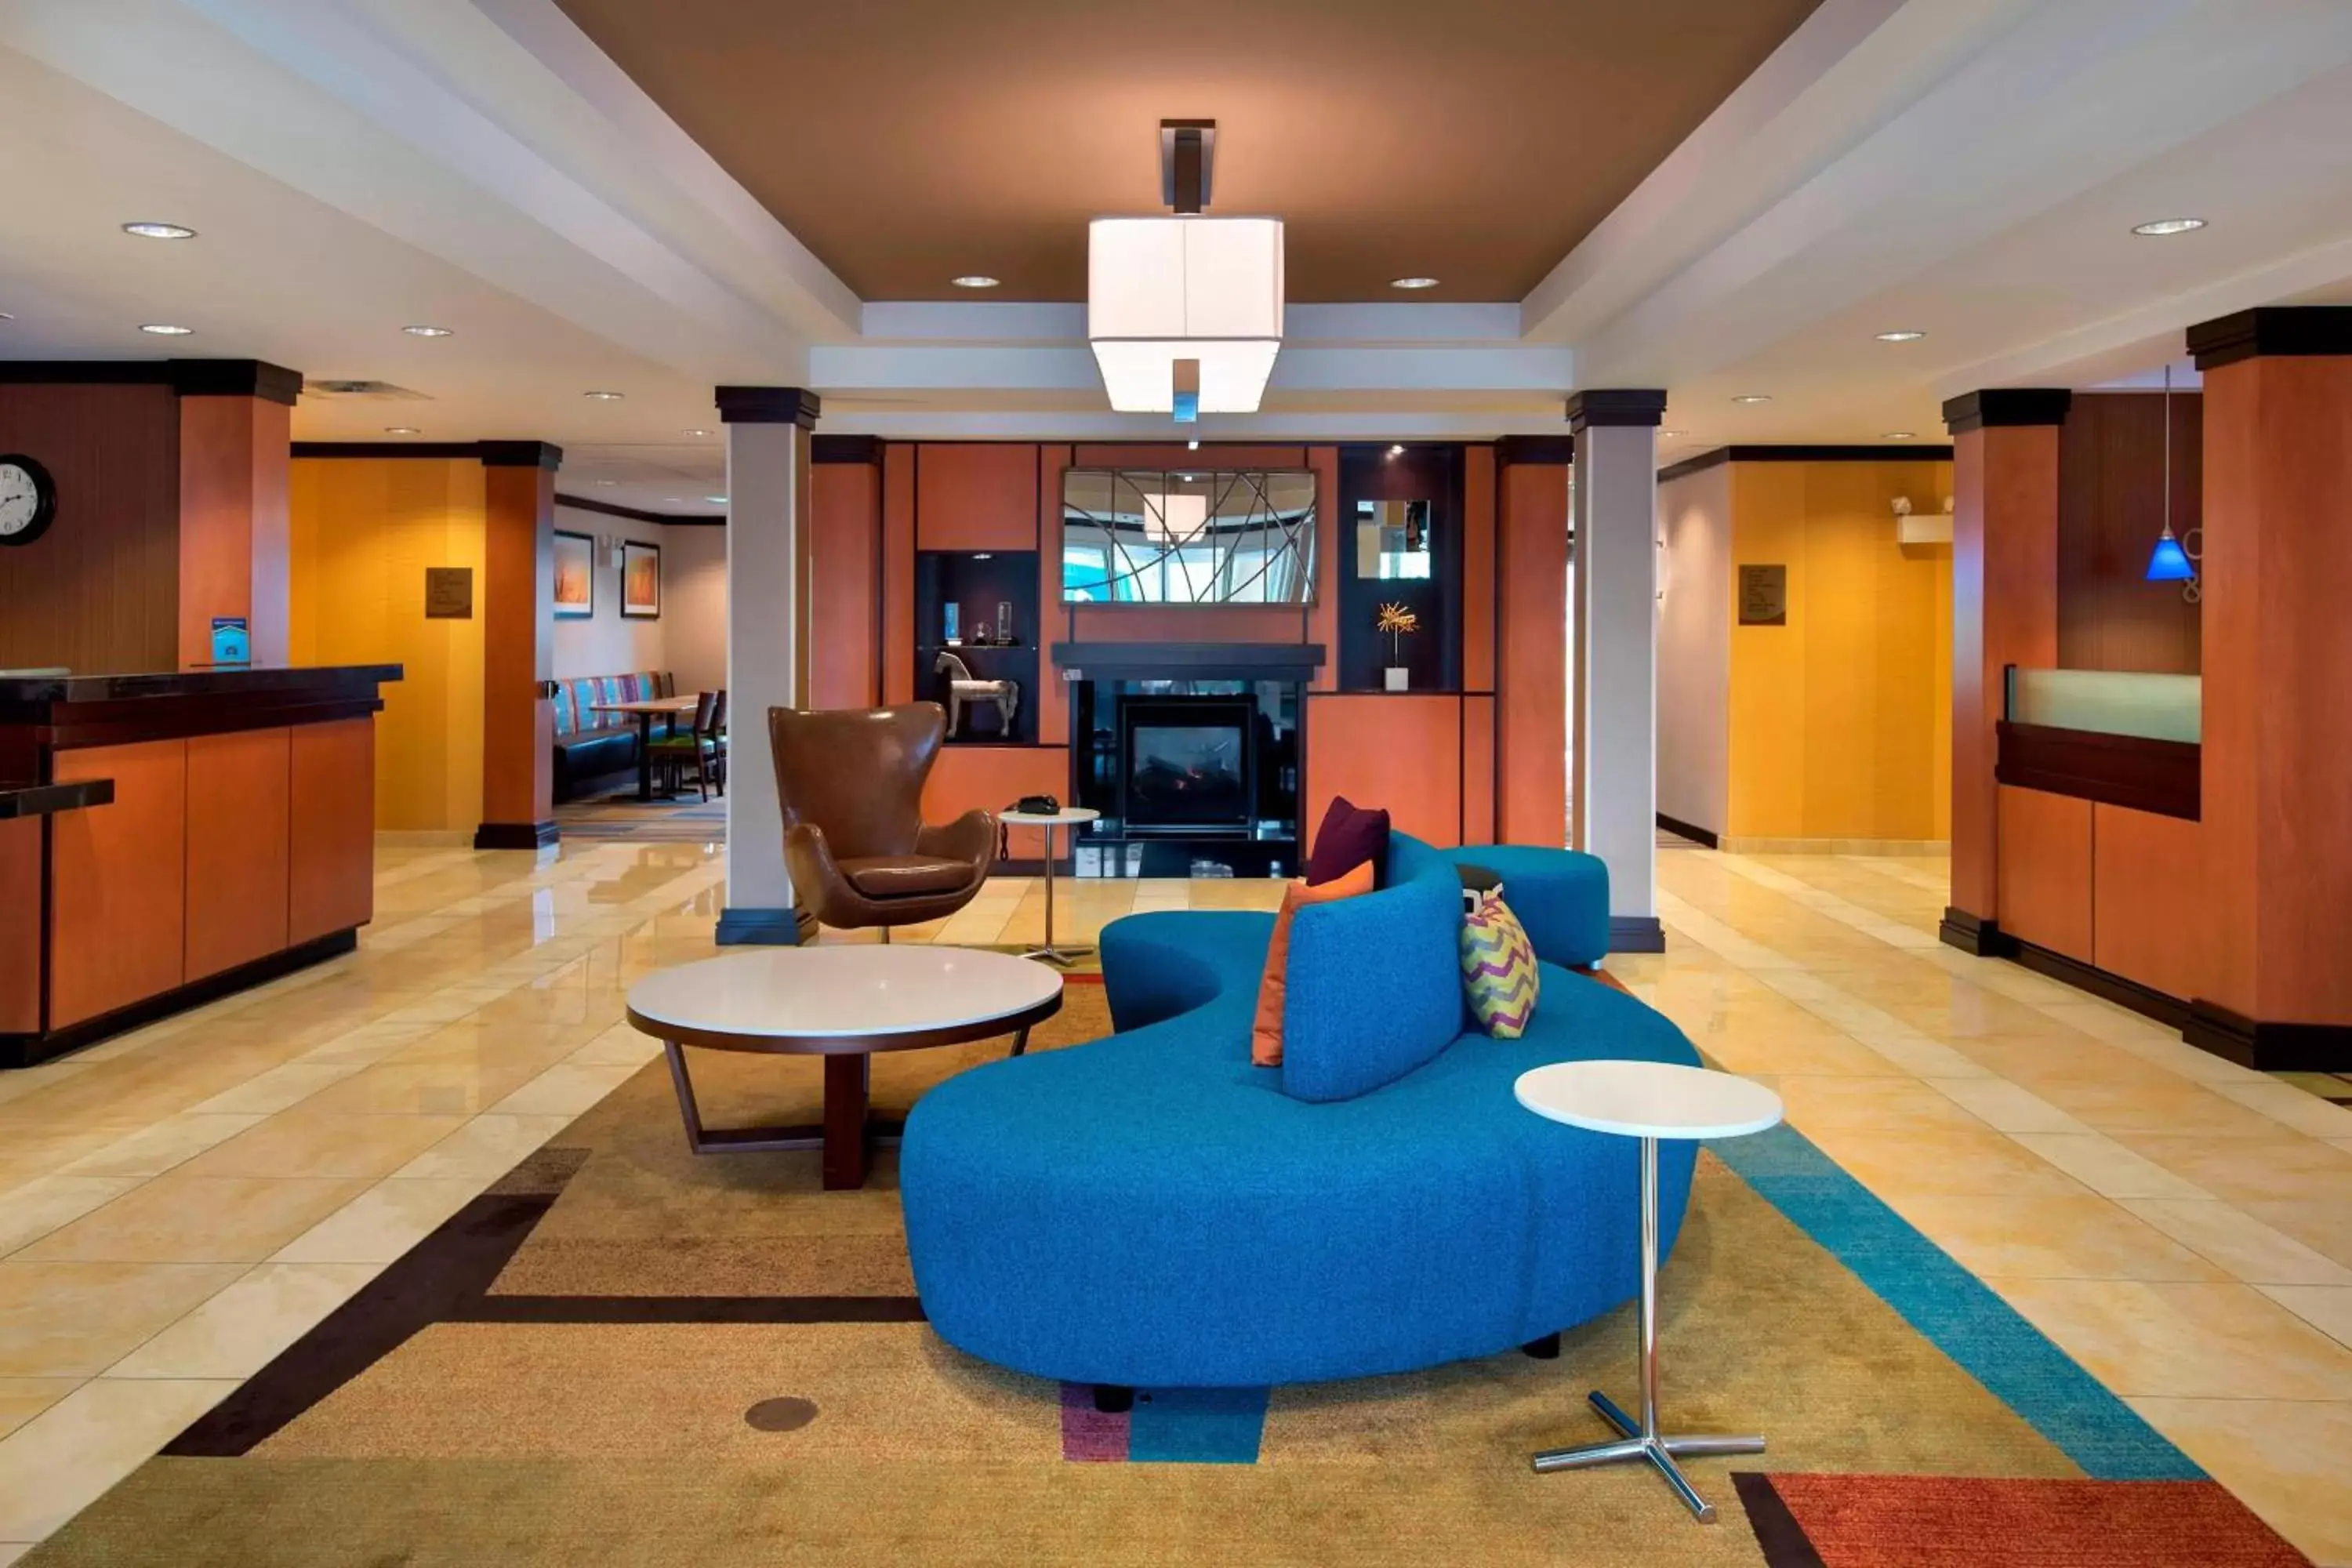 Lobby or reception, Lobby/Reception in Fairfield Inn & Suites Verona